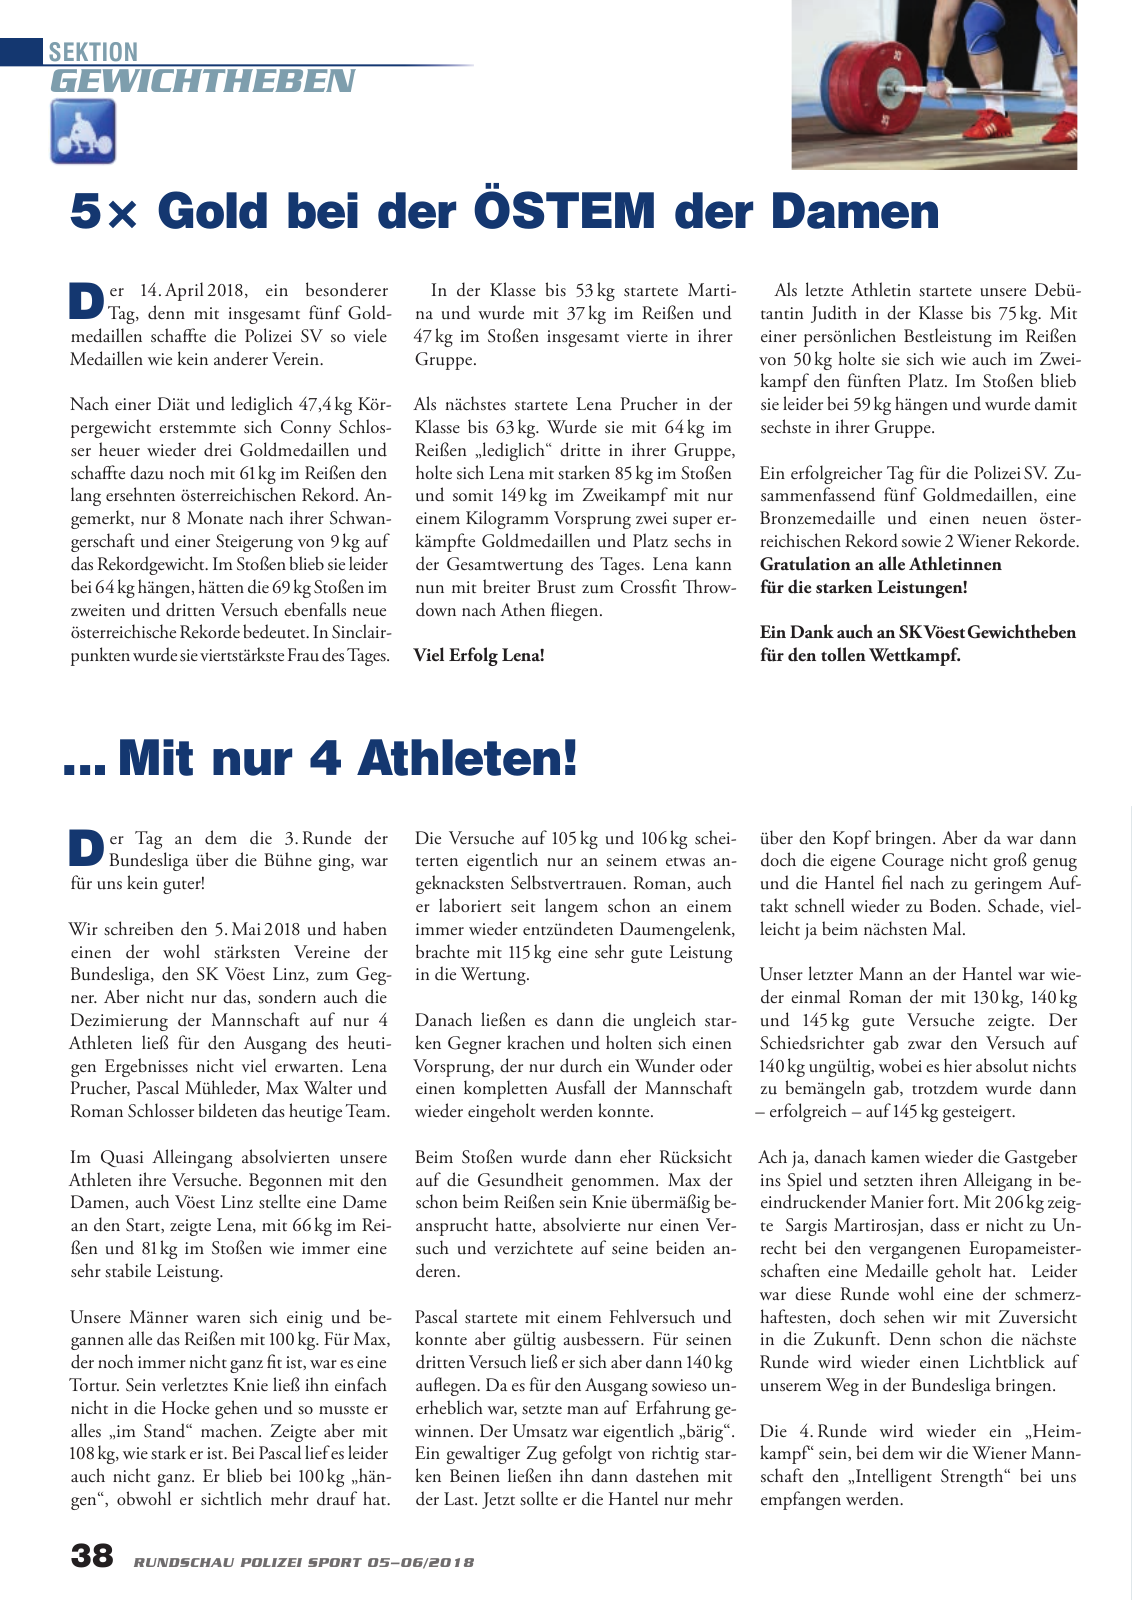 Vorschau Rundschau Polizei Sport 05-06/2018 Seite 38